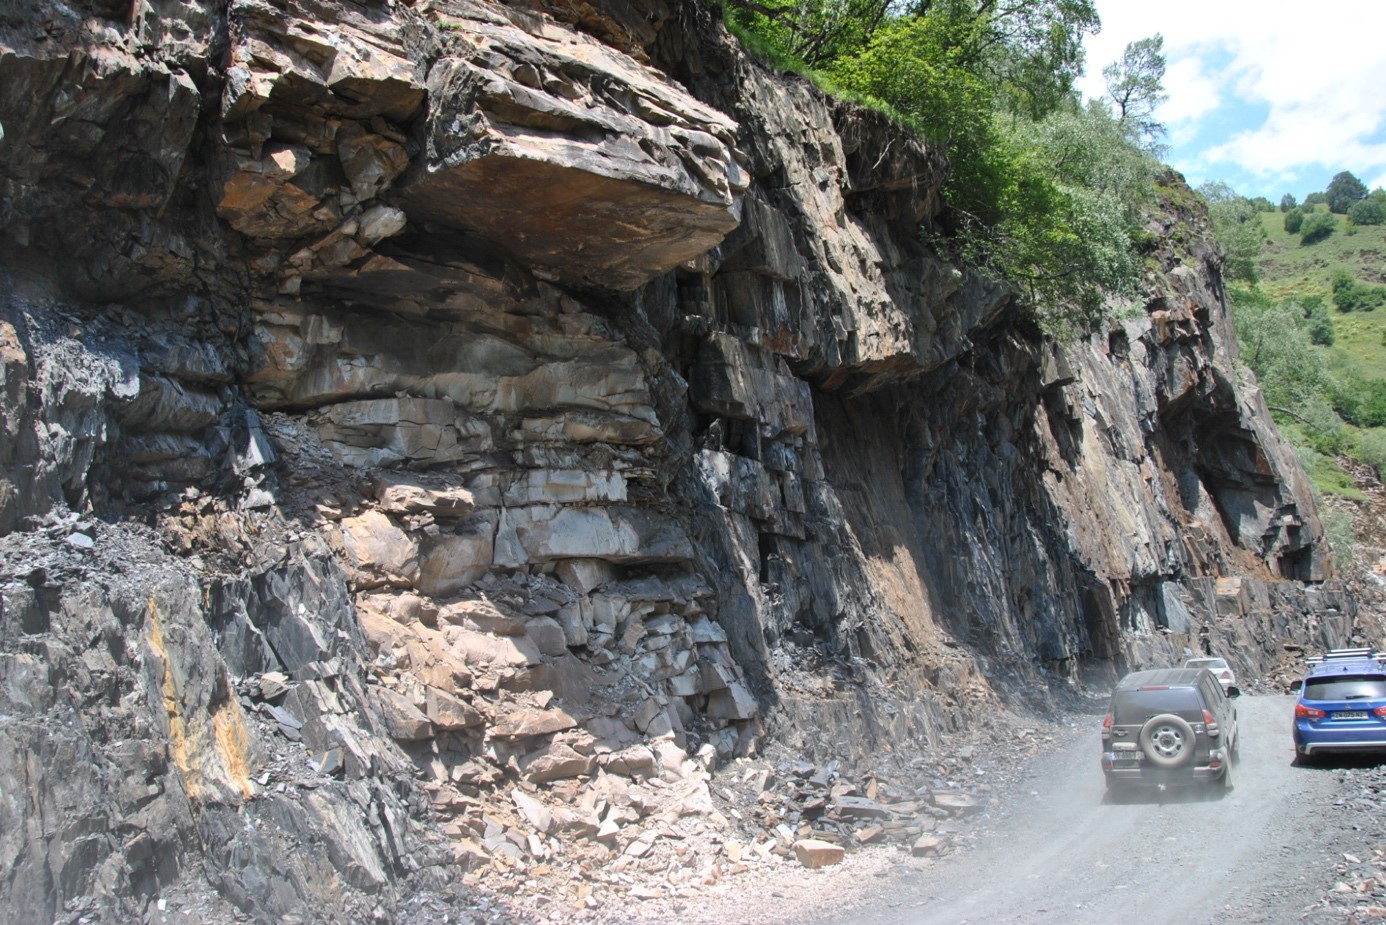 The road from Mestia to Ushguli